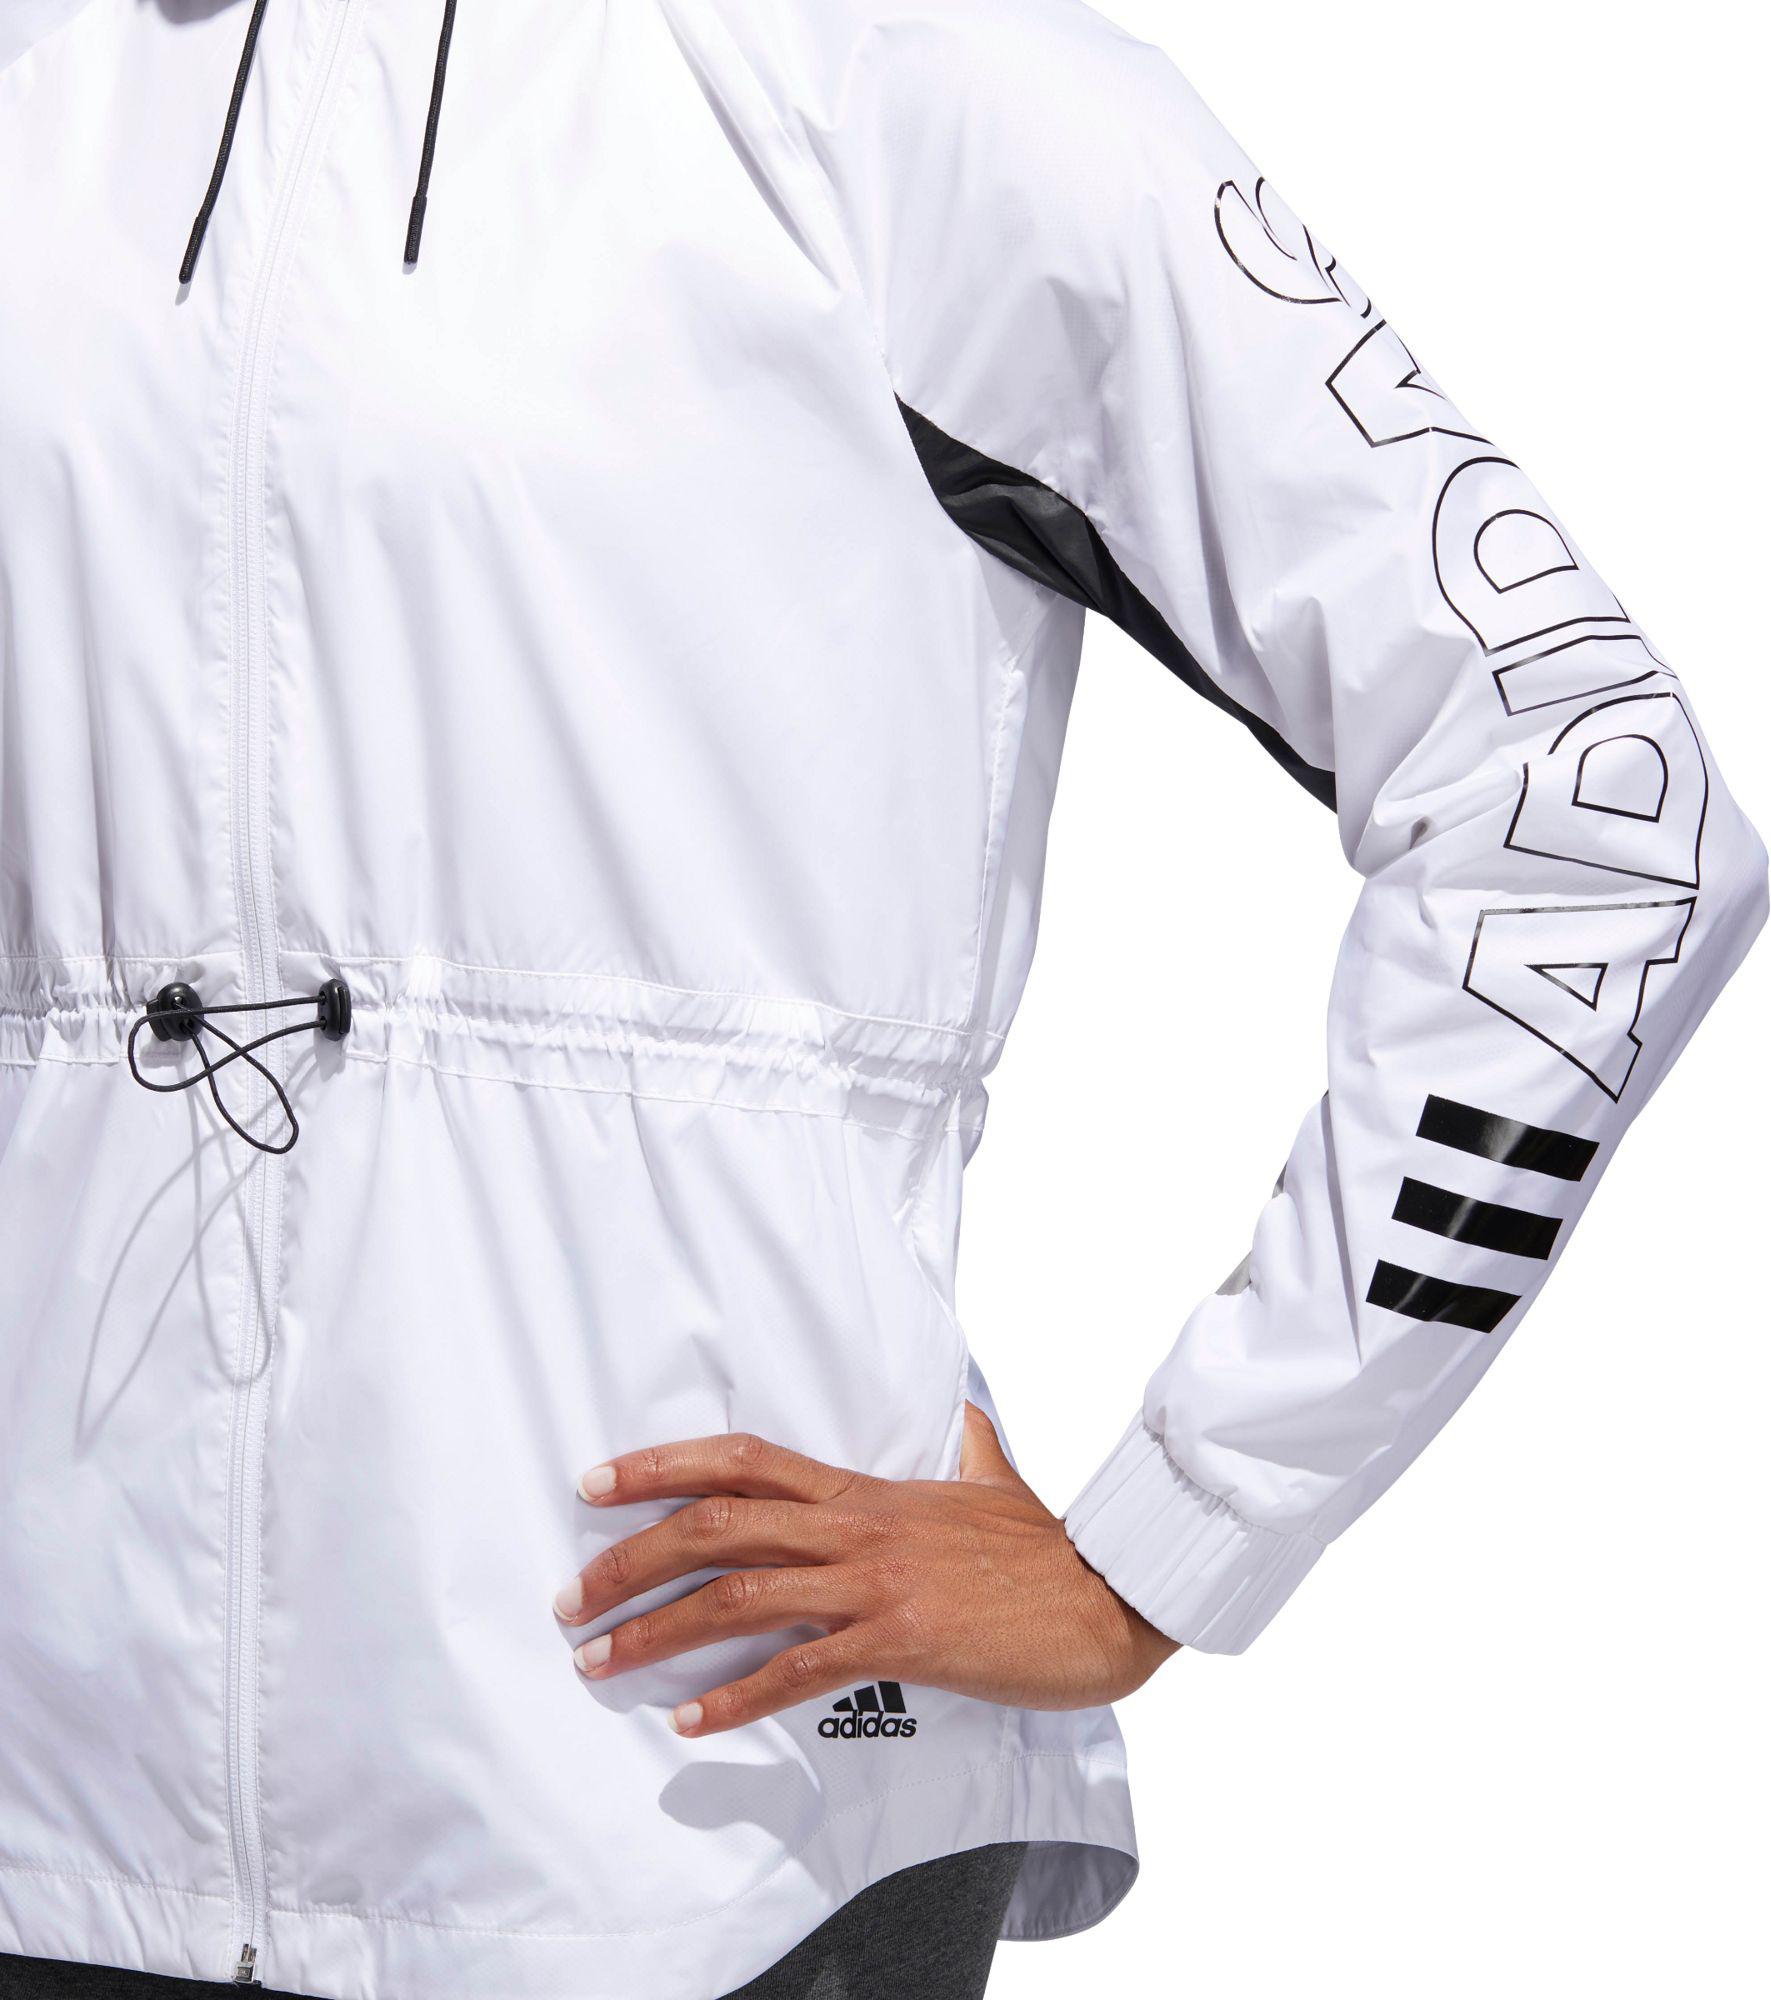 adidas women's outline windbreaker jacket